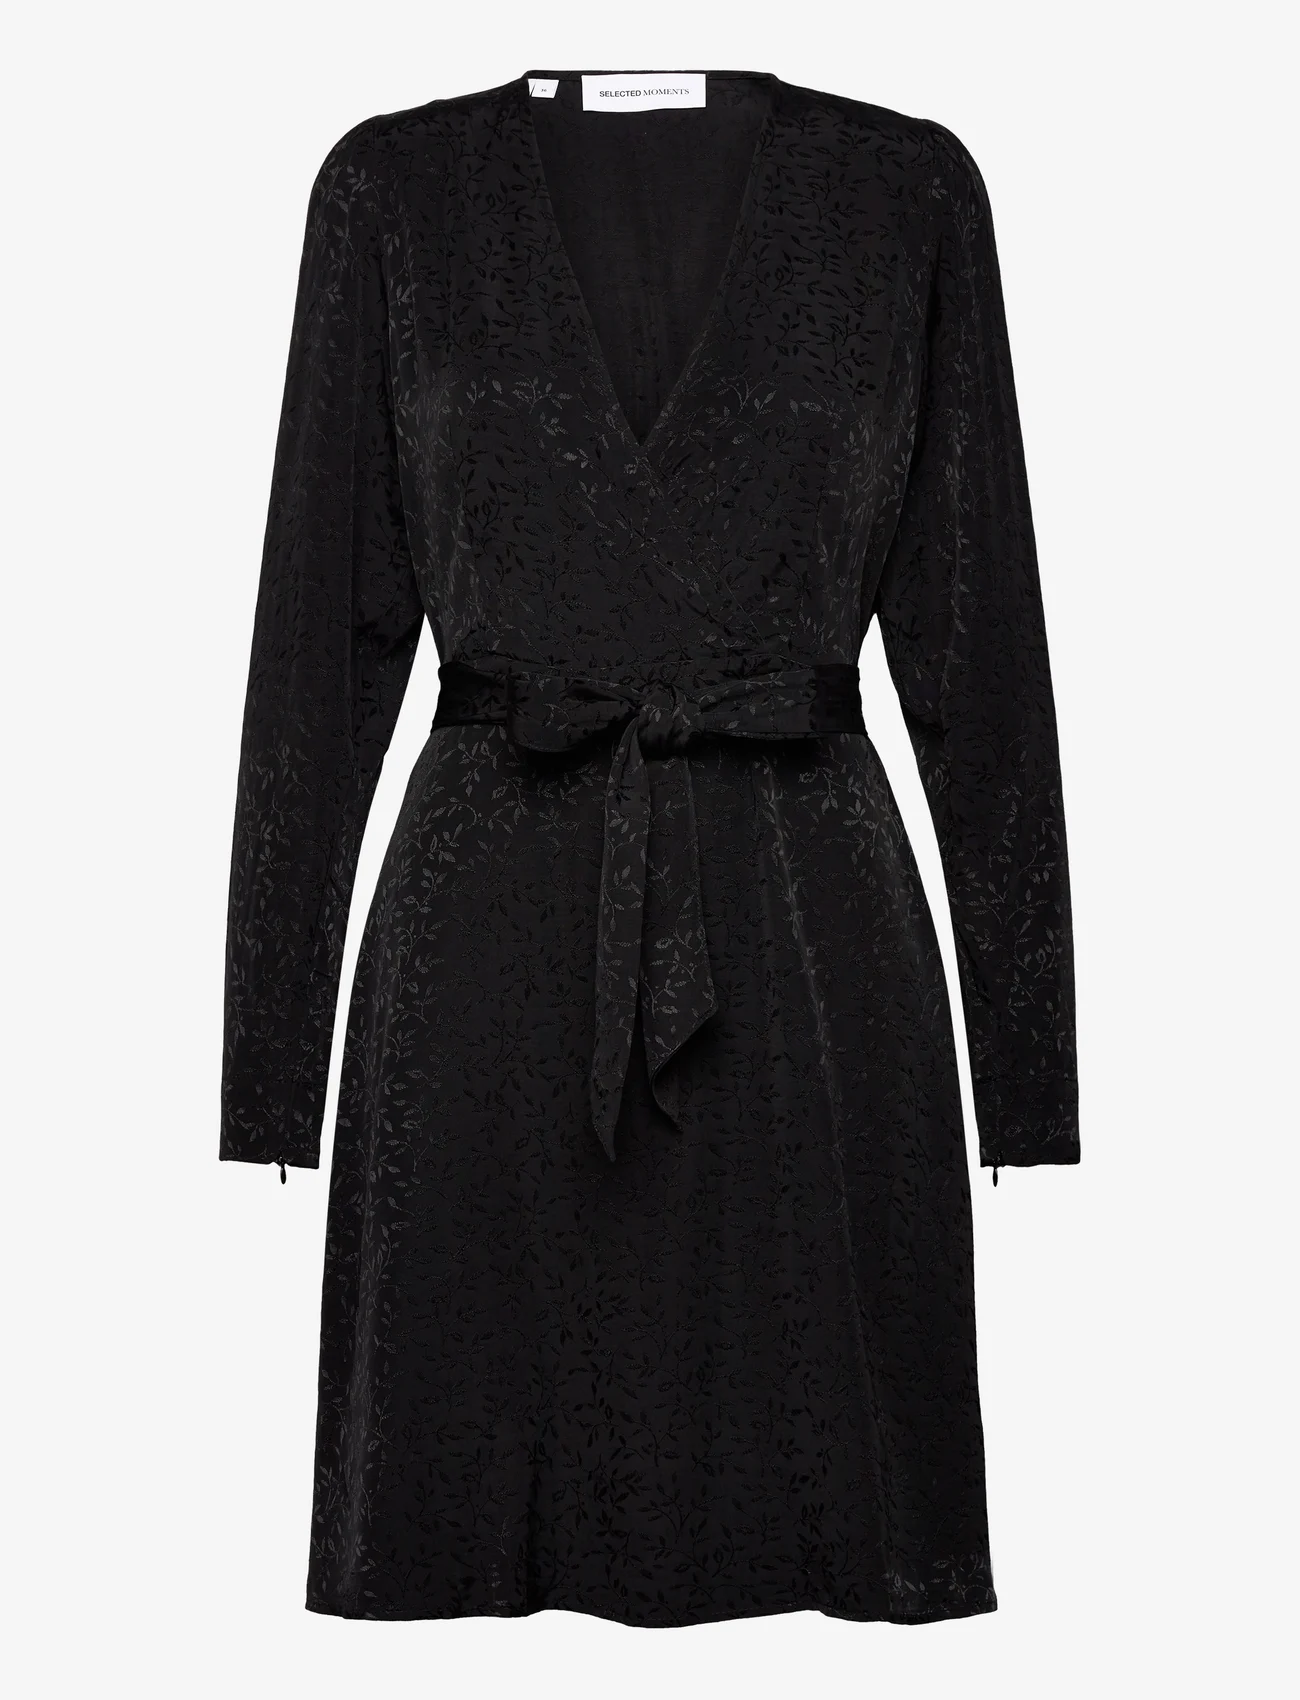 Selected Femme - SLFCELESTE LS SHORT DRESS B - festmode zu outlet-preisen - black - 0